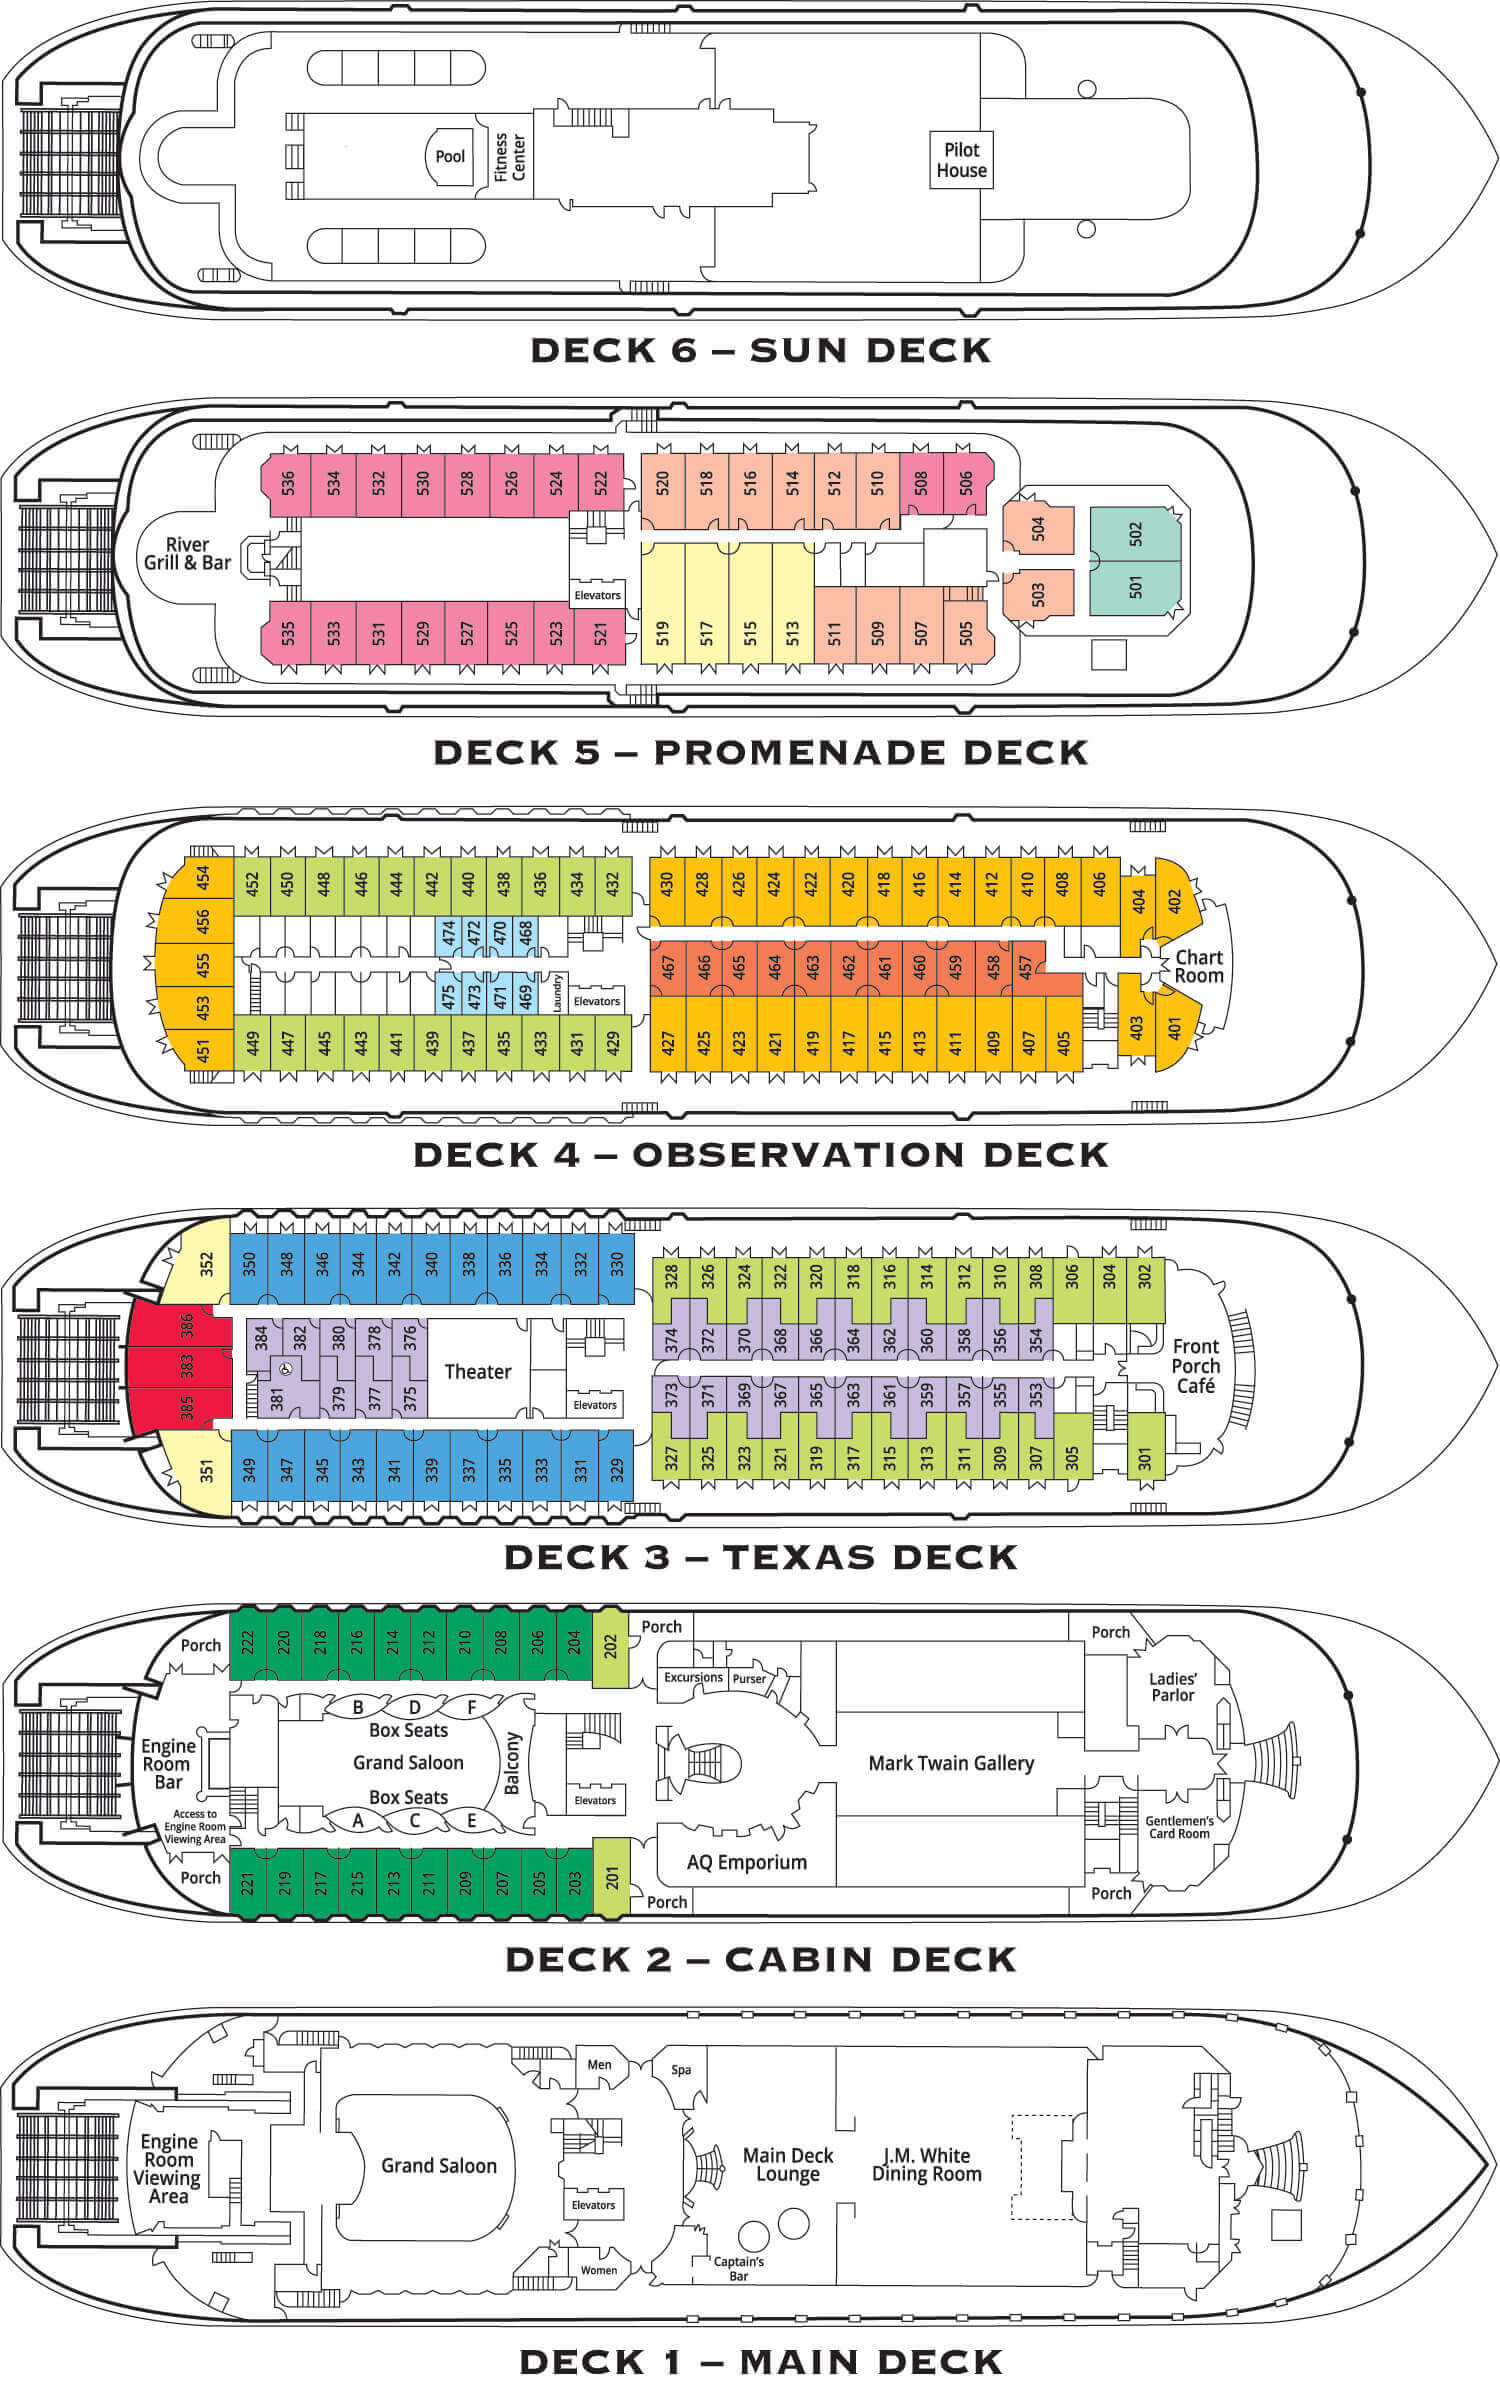 American Queen Deck Plan